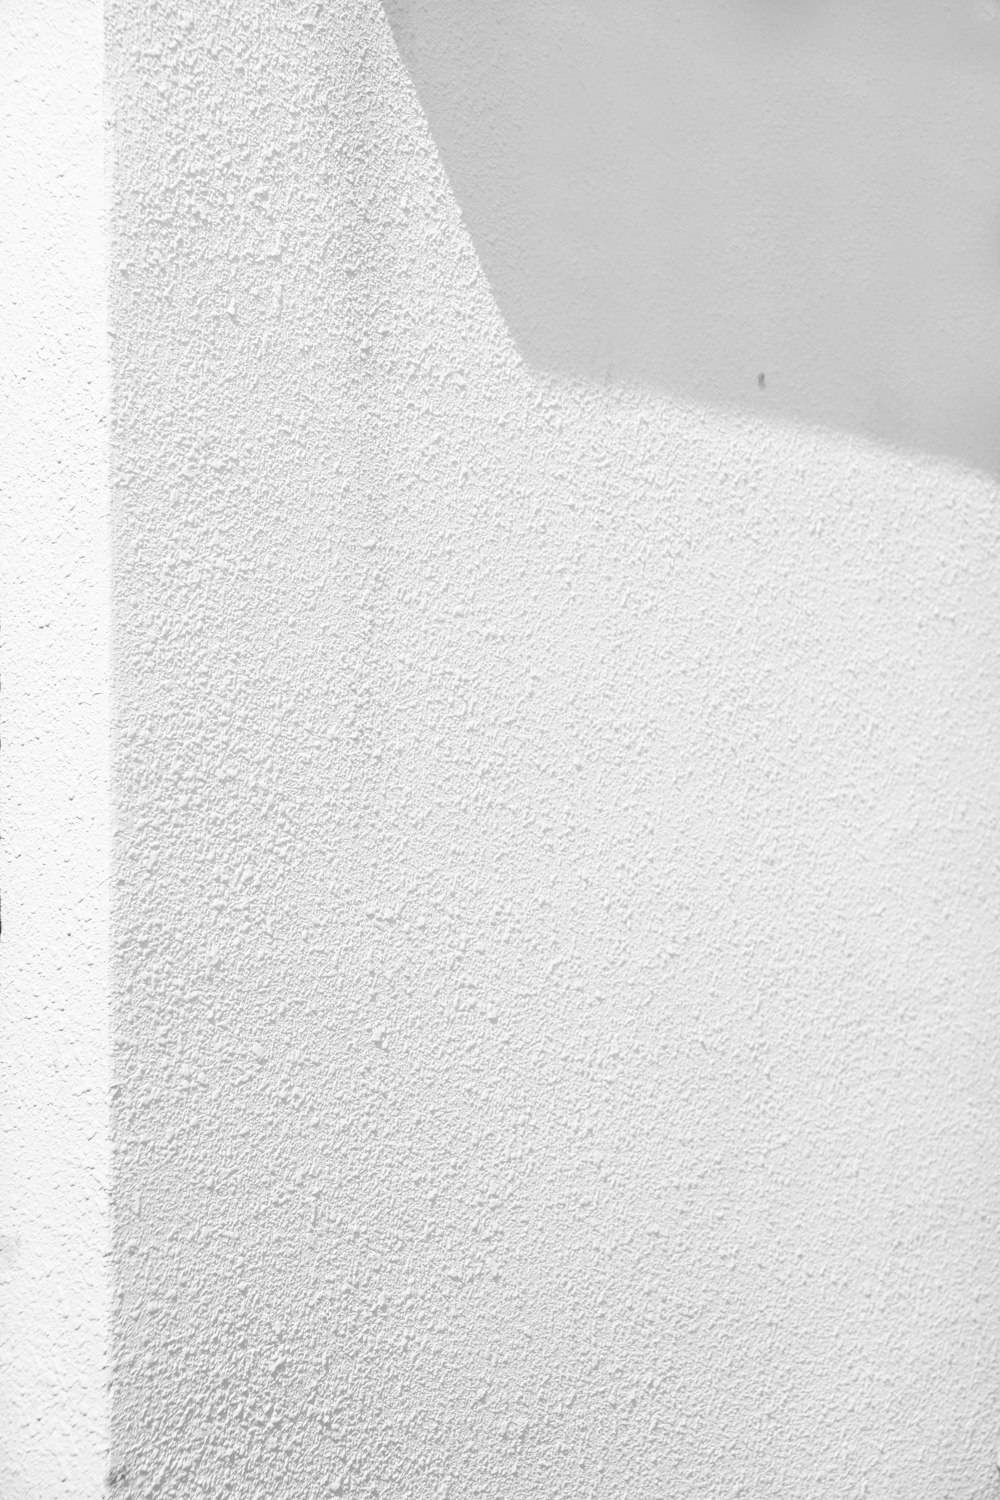 muro di cemento bianco